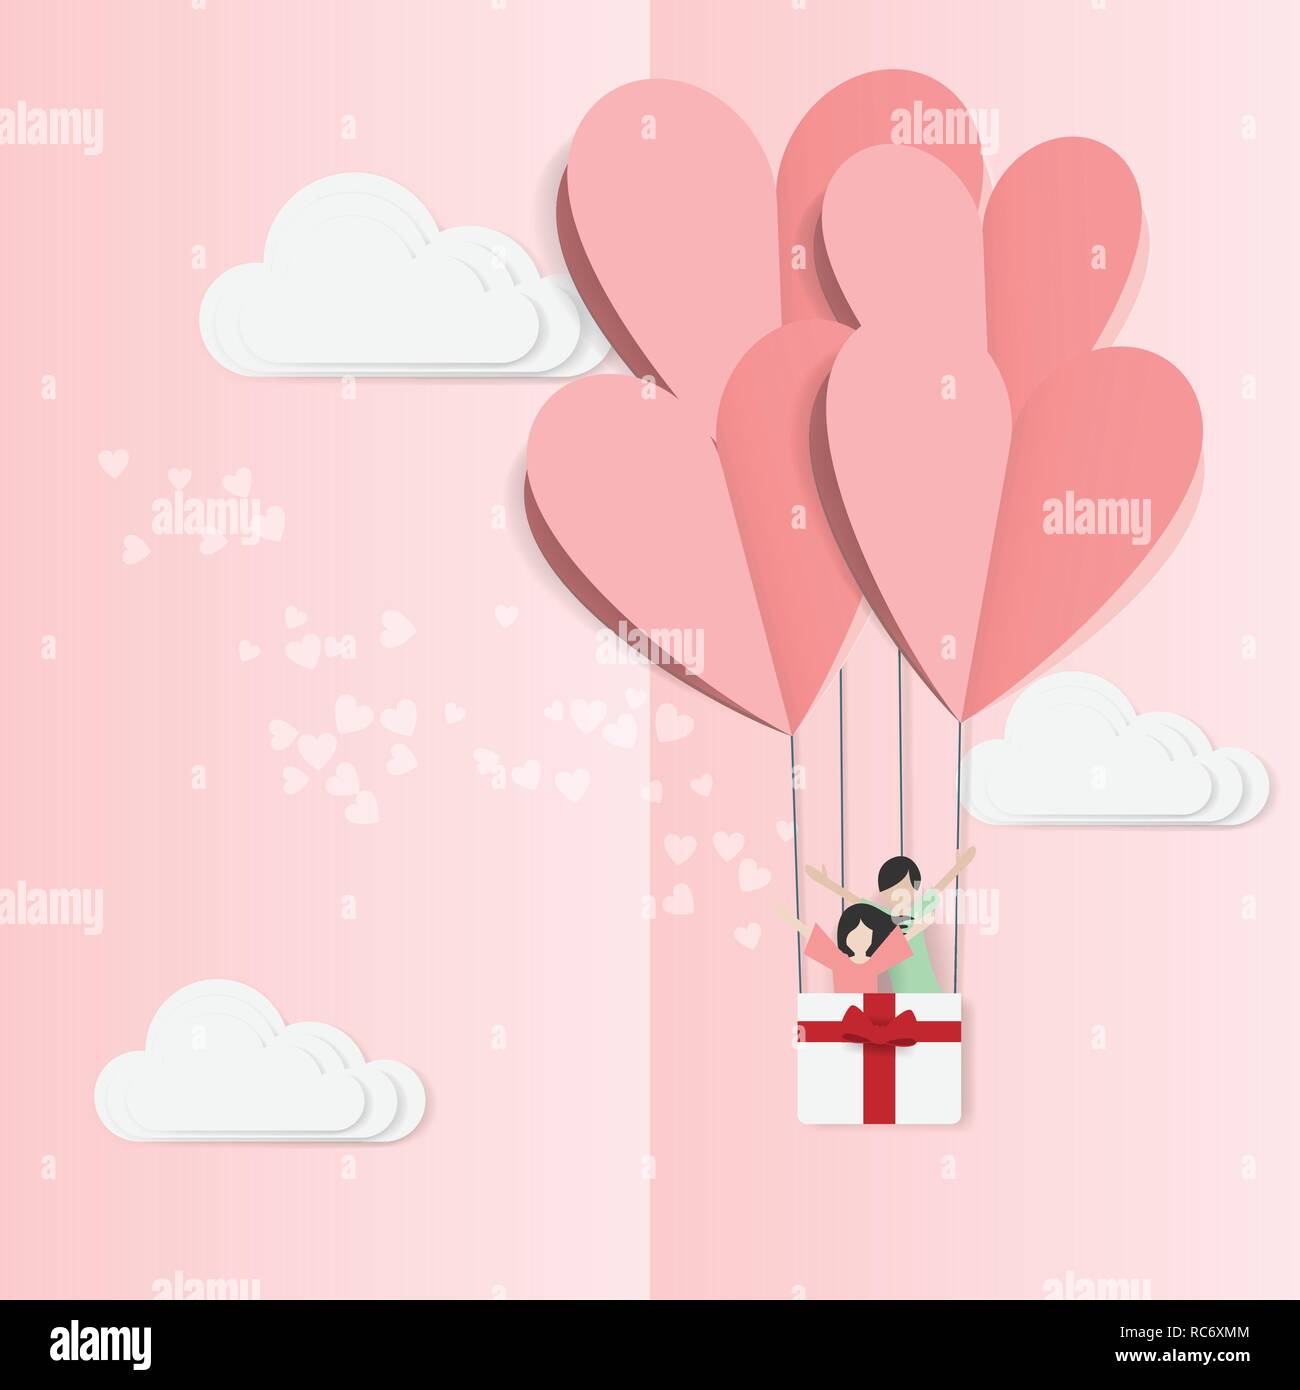 Vecteur d'amour et de Happy Valentines Day. éléments de design d'origami couper du papier fait hot air balloon flying avec amour couple intérieur panier et coeur flotter Illustration de Vecteur